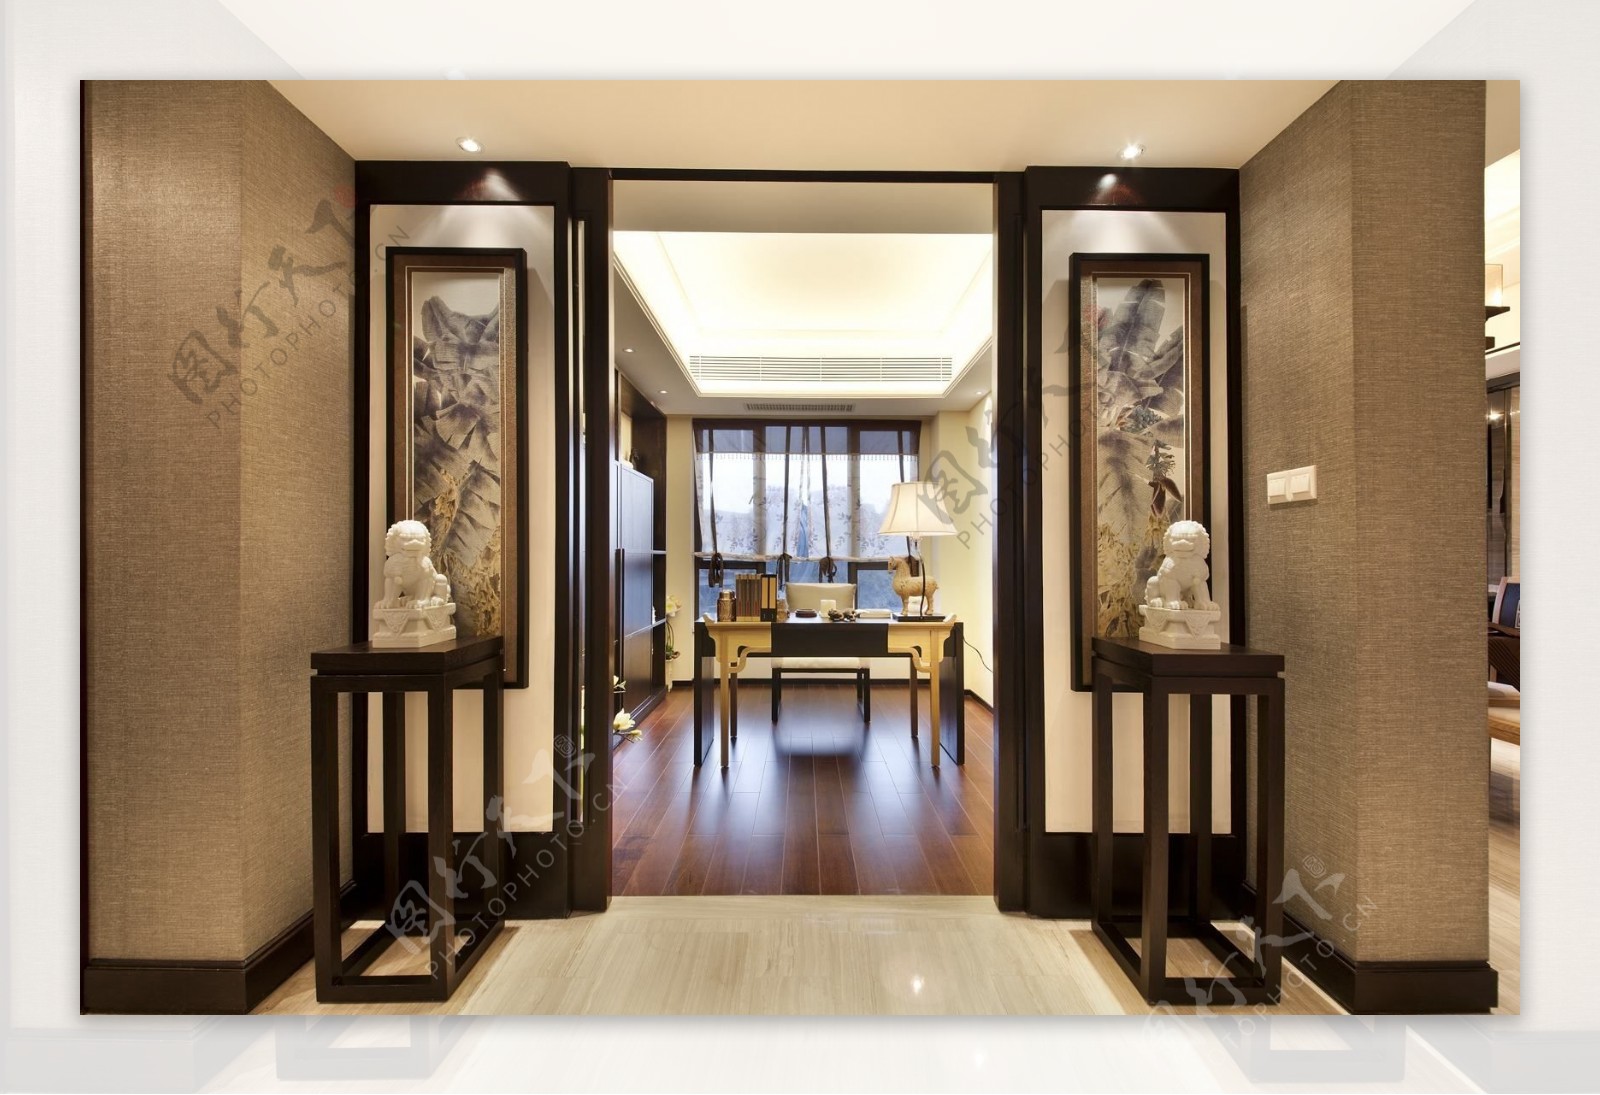 中式清雅客厅走廊花瓶装饰室内装修效果图